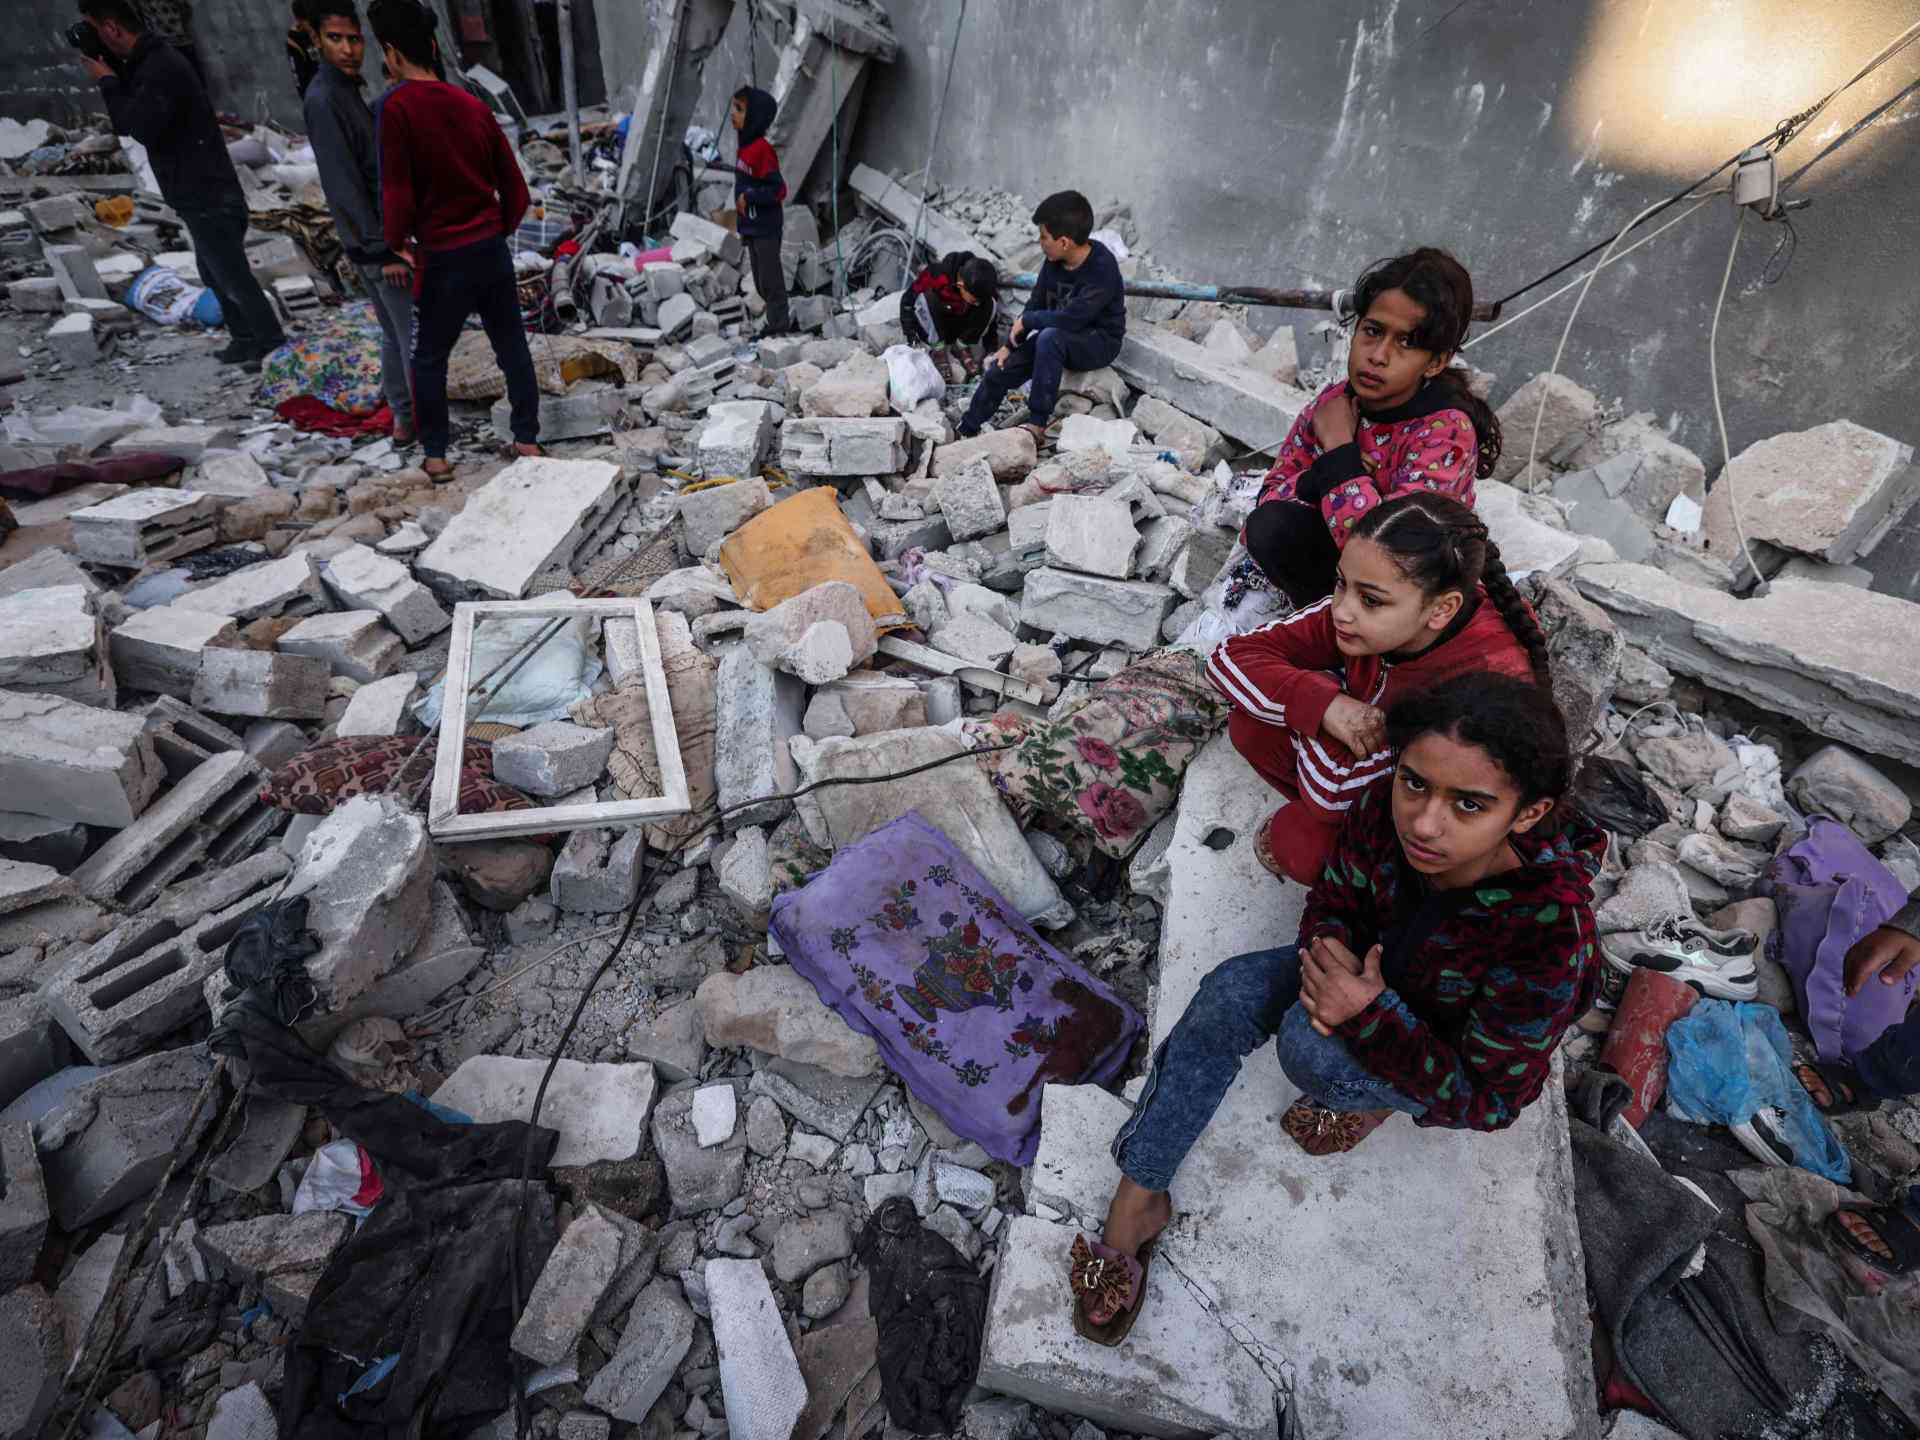 أبرز تطورات اليوم الـ84 من العدوان الإسرائيلي على غزة | أخبار – البوكس نيوز